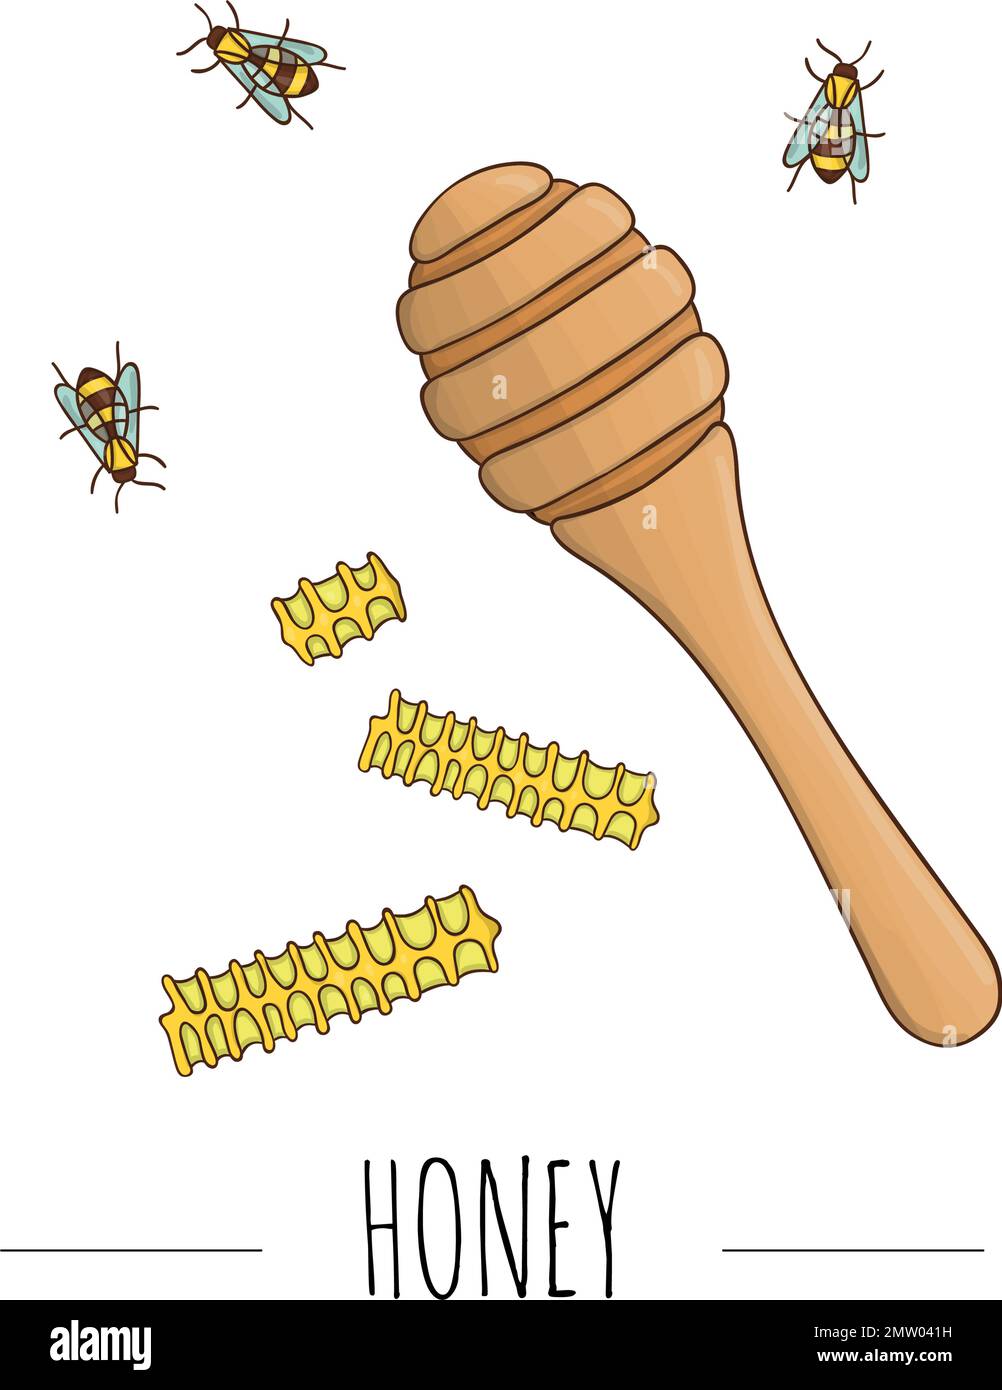 Illustrazione vettoriale di cucchiaio di miele, pettini, api. Banner, scheda, modello, cartello, cartello o poster per il negozio di miele fatto in casa. Icona a tema miele, logo o Illustrazione Vettoriale